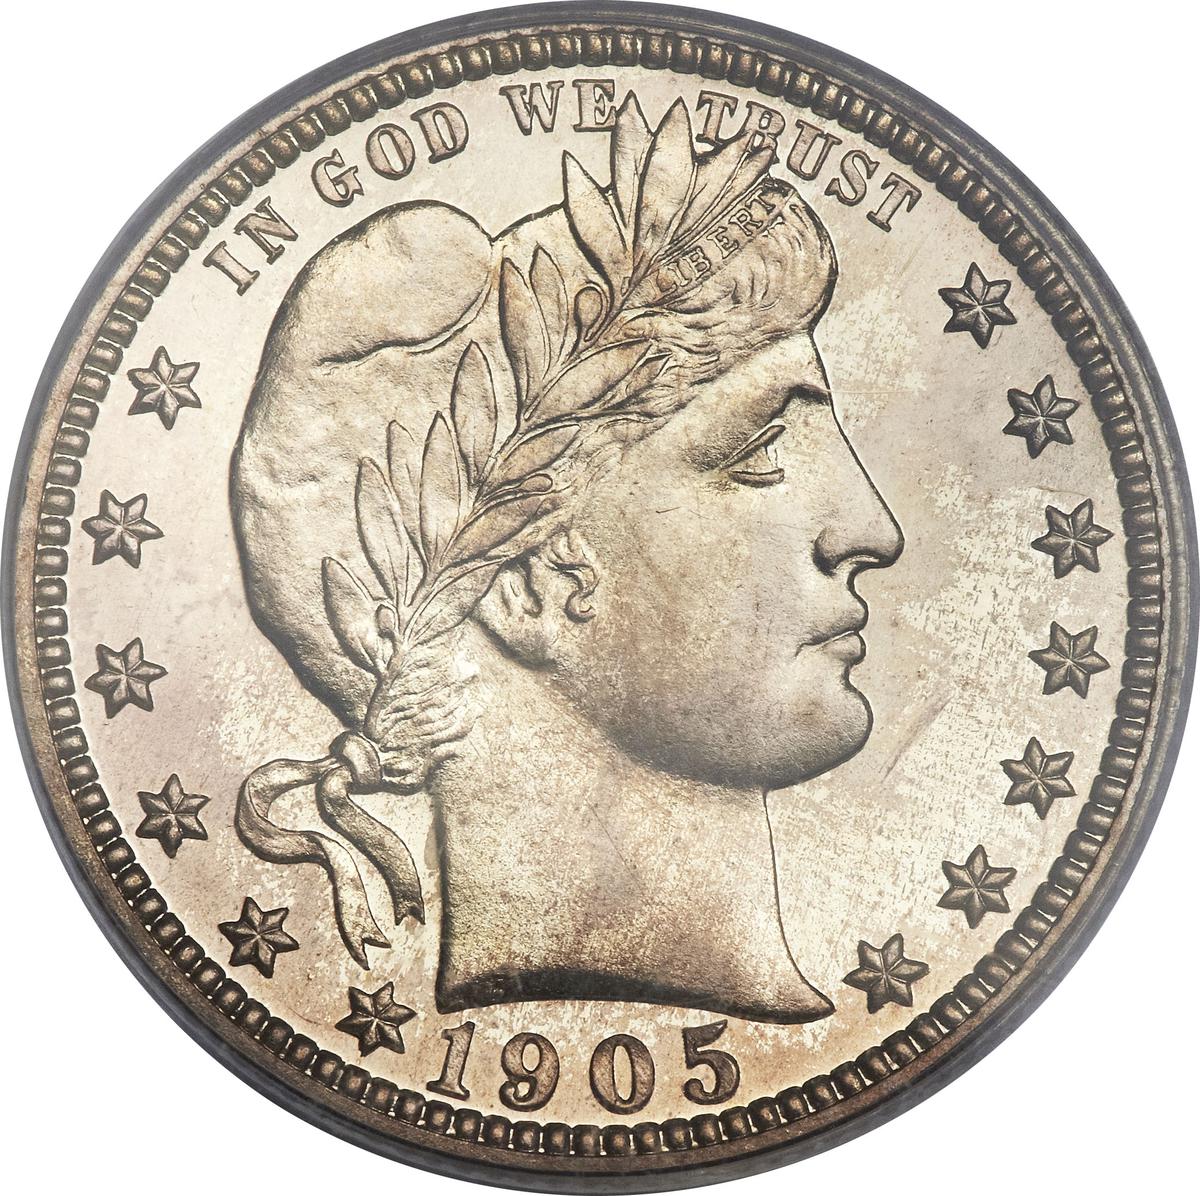 Coin ¼ Dollar "Barber Quarter" Estados Unidos undefined